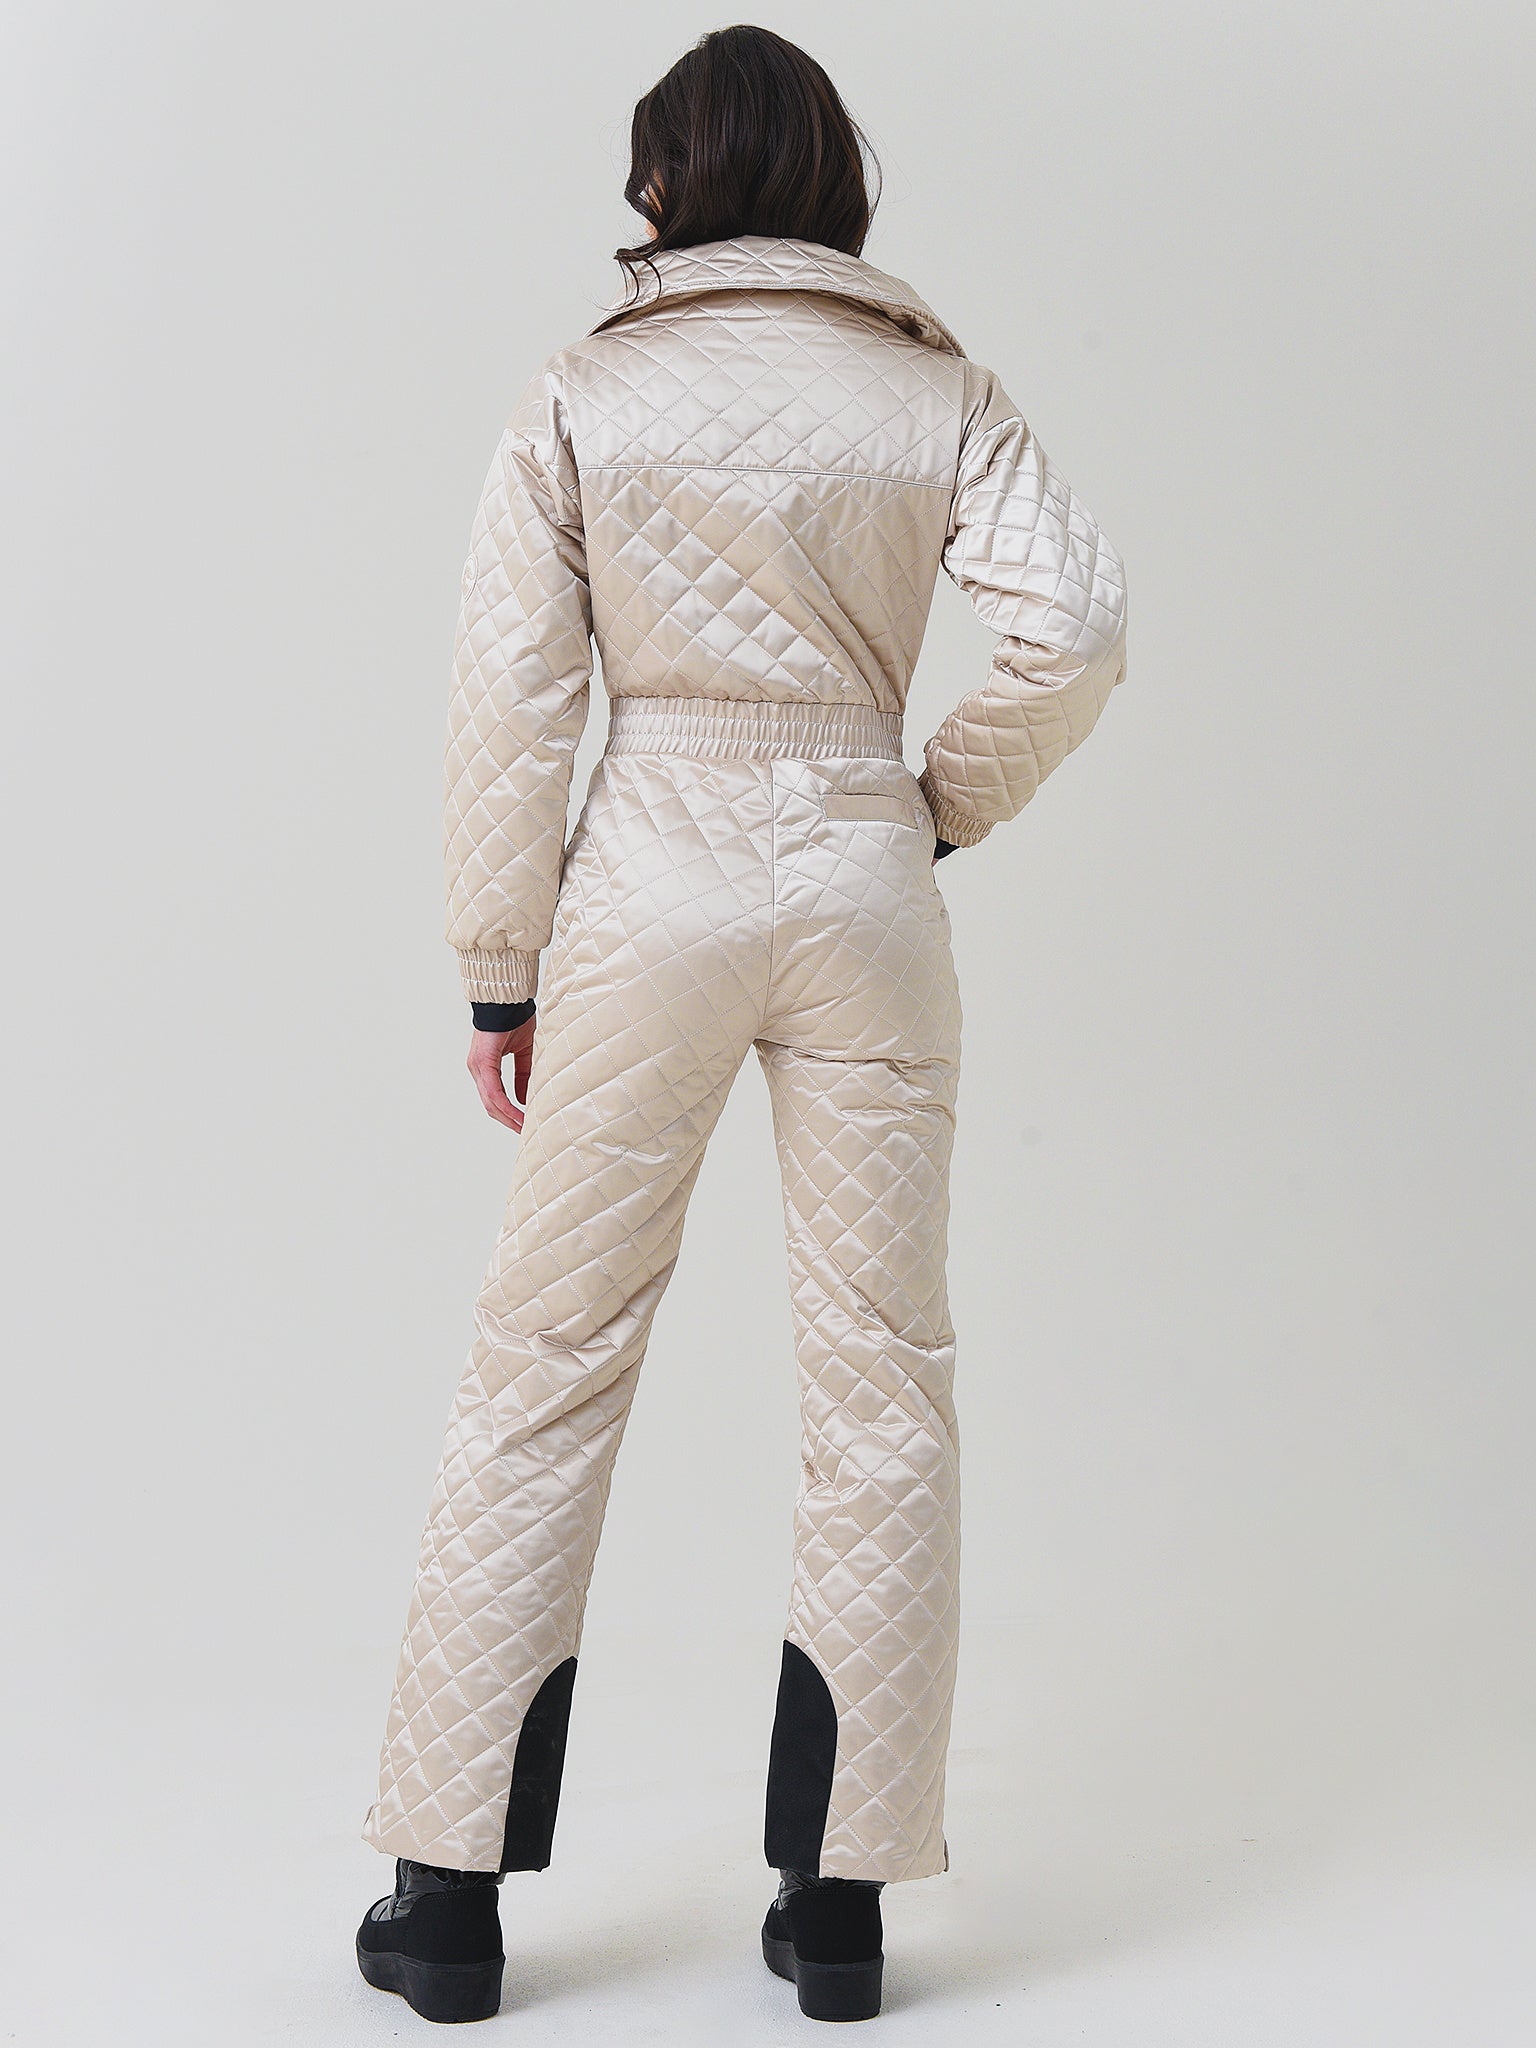 Courmayuer Ski Suit in White - Cordova